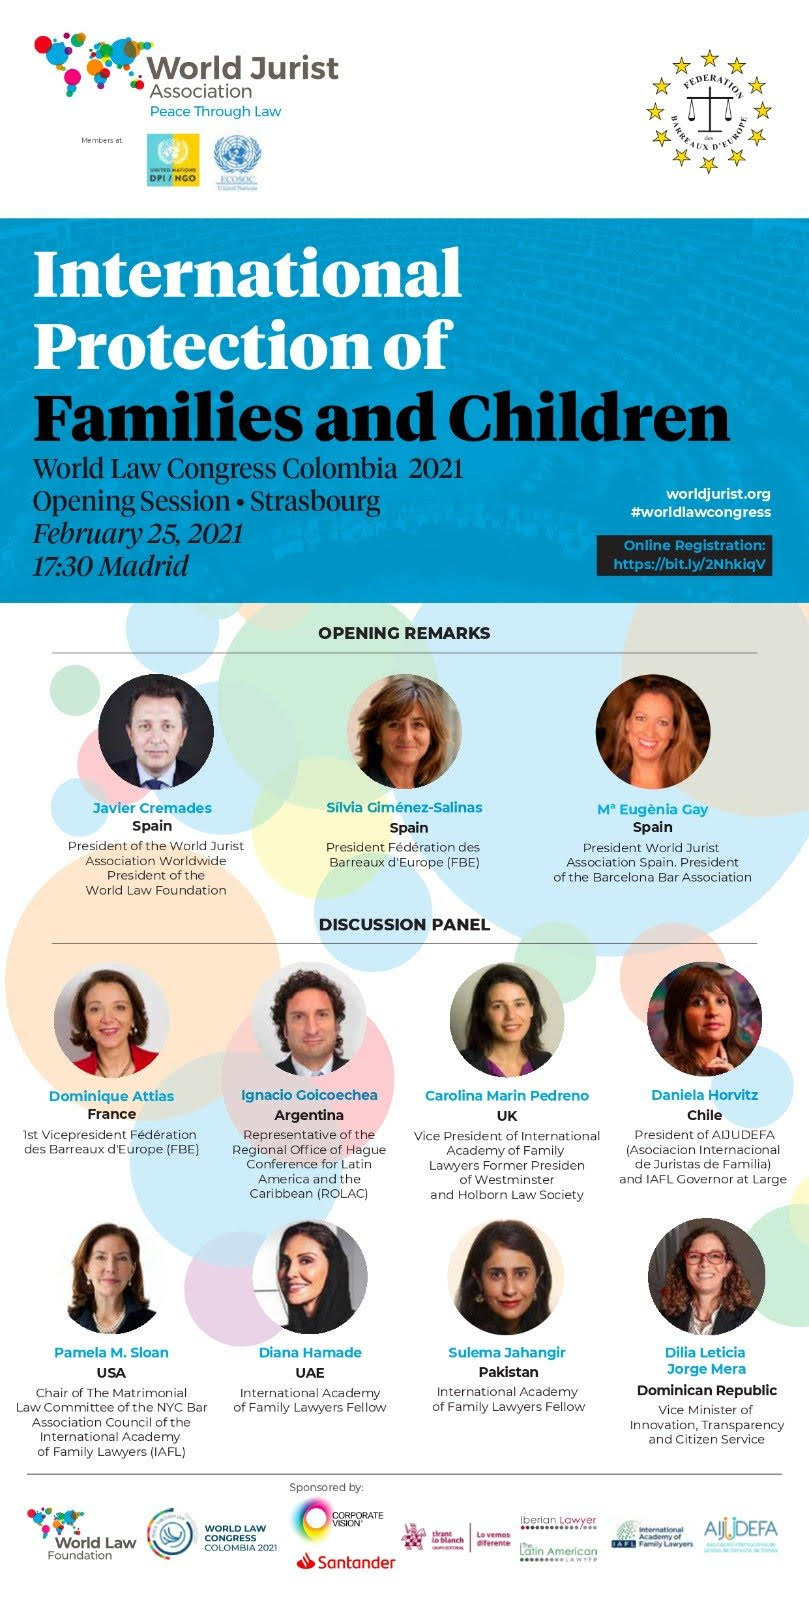 La protección internacional de las familias y los niños a debate en una nueva opening session organizada por la World Jurist Association